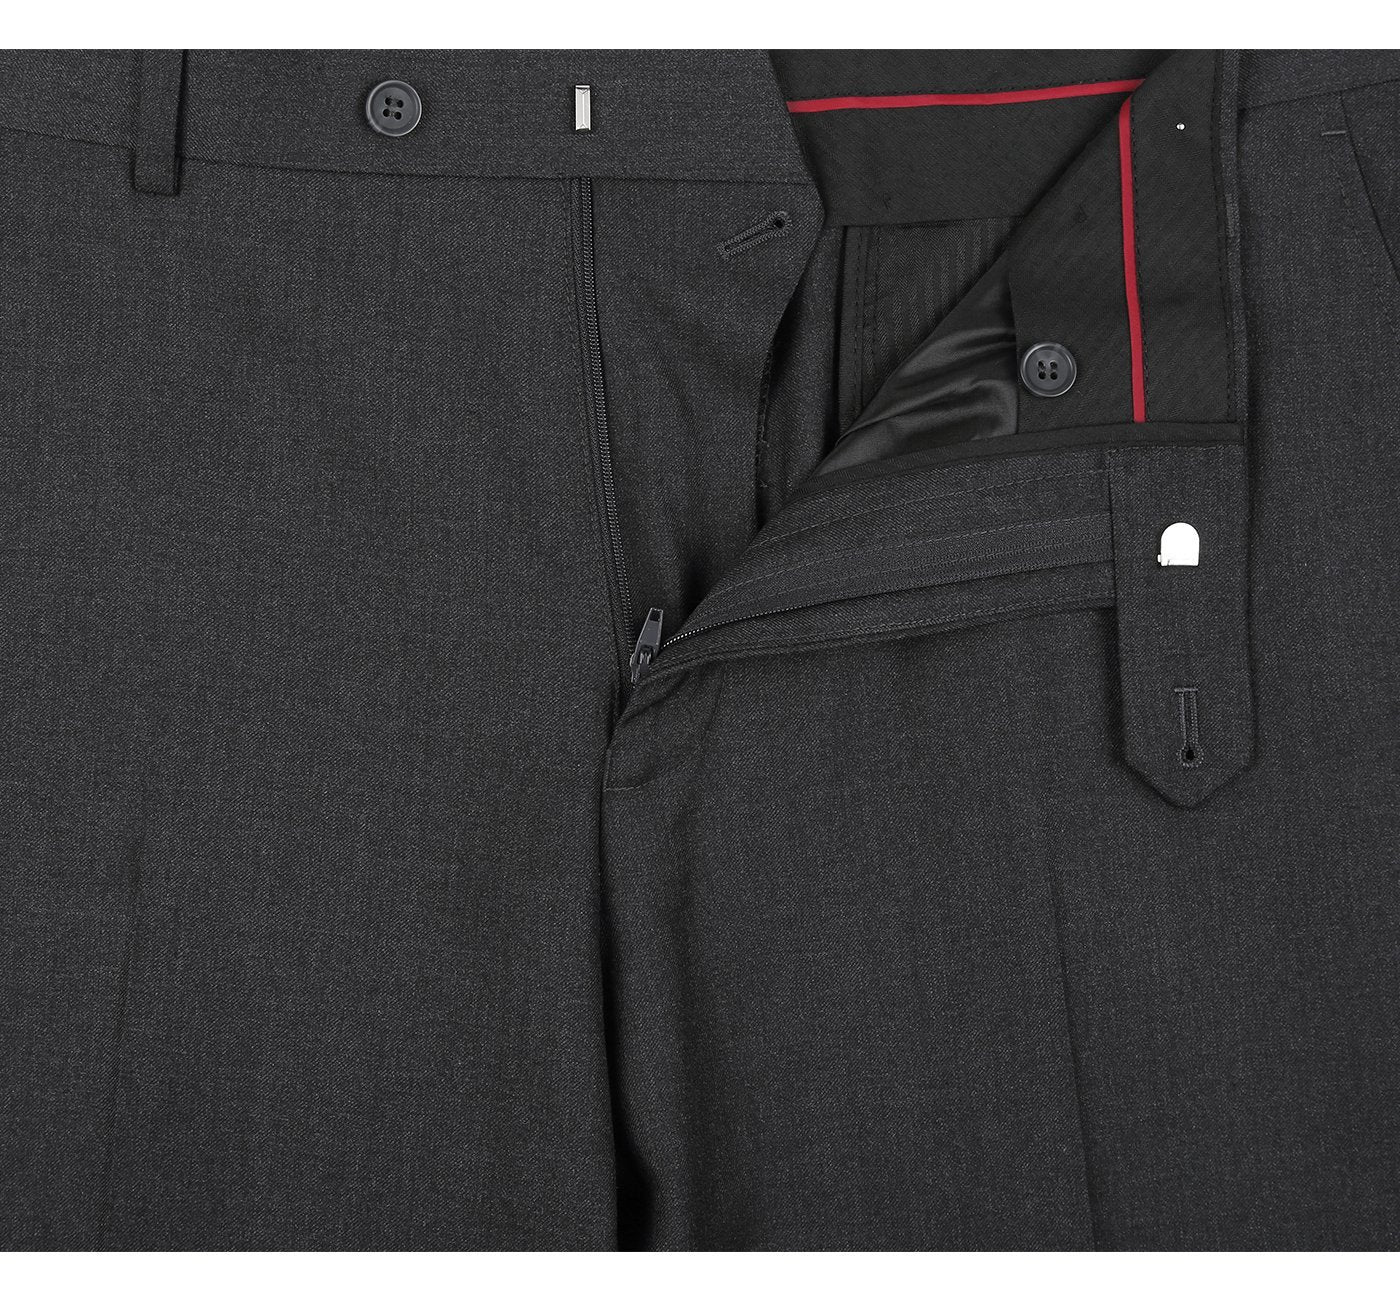 202-1 Men's Charcoal Flat Front Suit Separate Pants